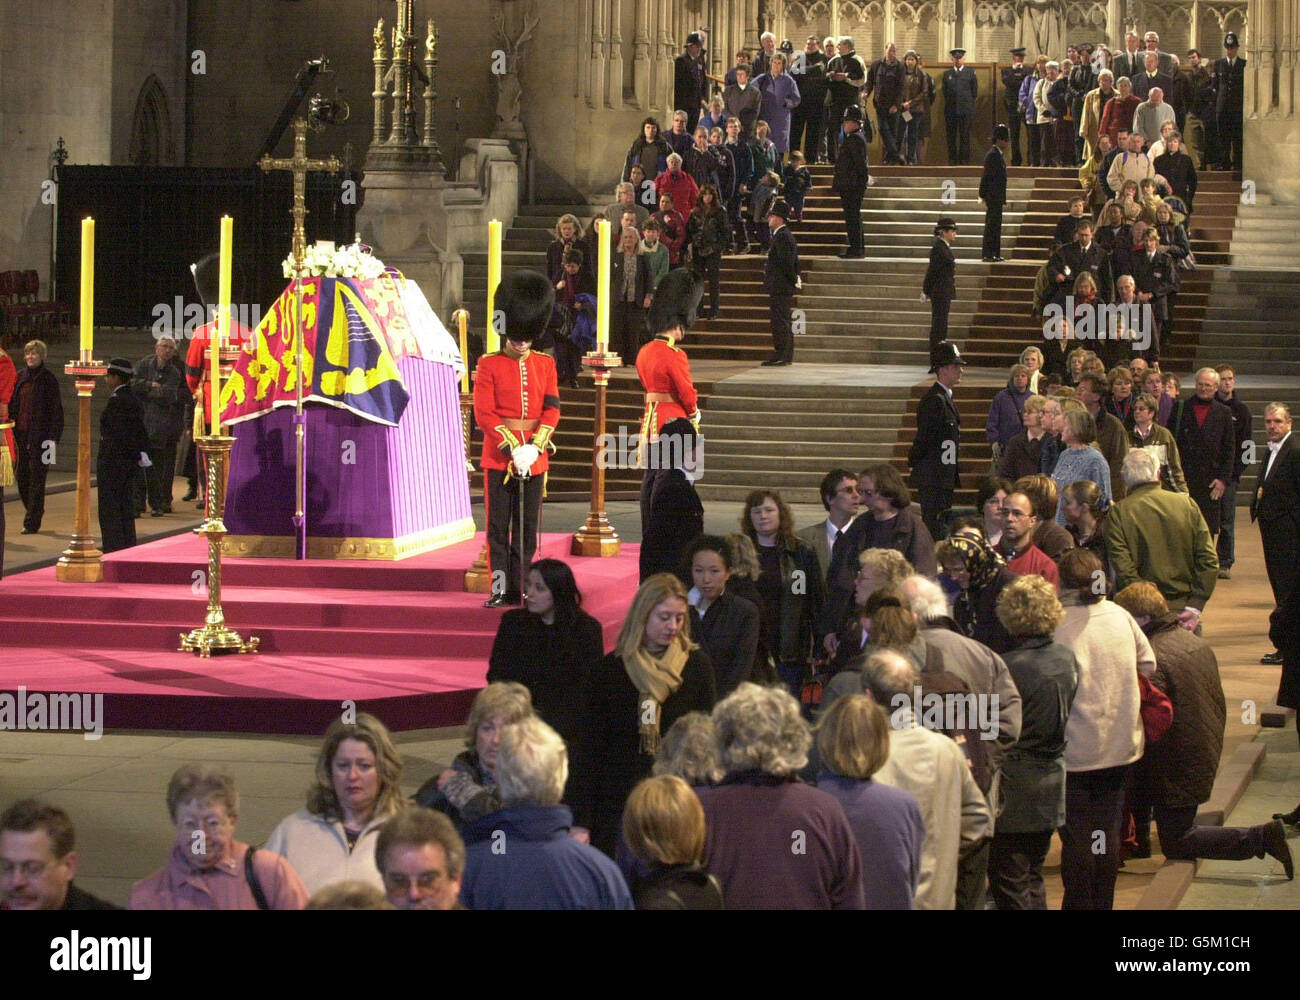 Wachoffiziere bewachen den Sarg von Königin Elizabeth, der Königin-Mutter, die im Staat in der Westminster Hall liegt, vor ihrer Beerdigung in der Westminster Abbey. Stockfoto